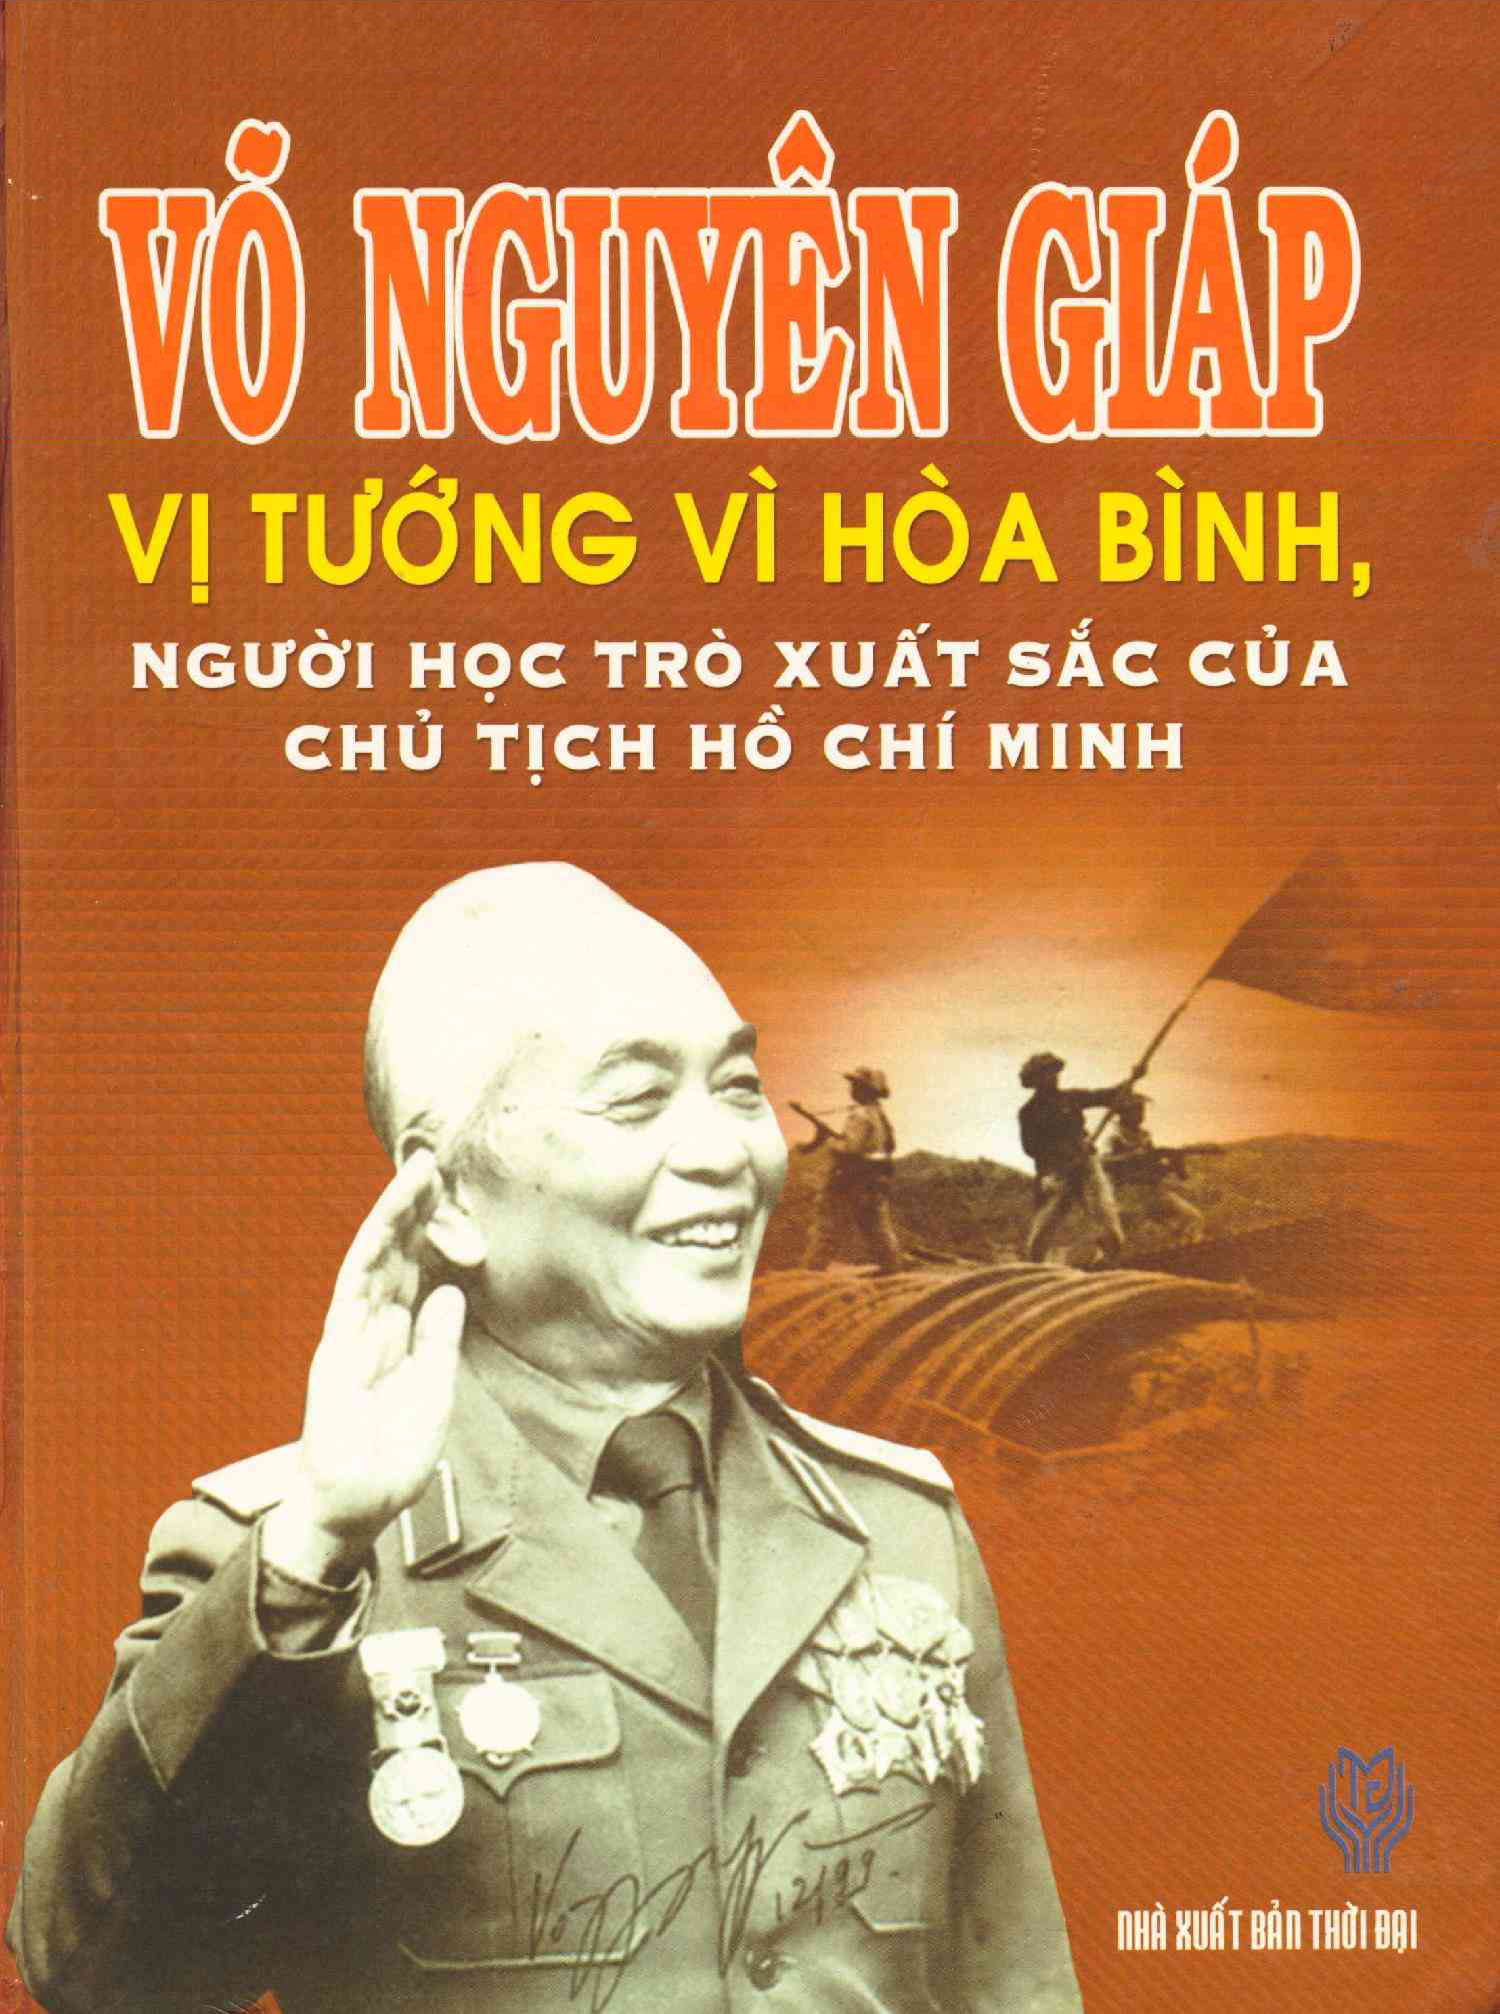 Võ Nguyên Giáp - vị tướng vì hòa bình người học trò xuất sắc của chủ tịch Hồ CHí Minh